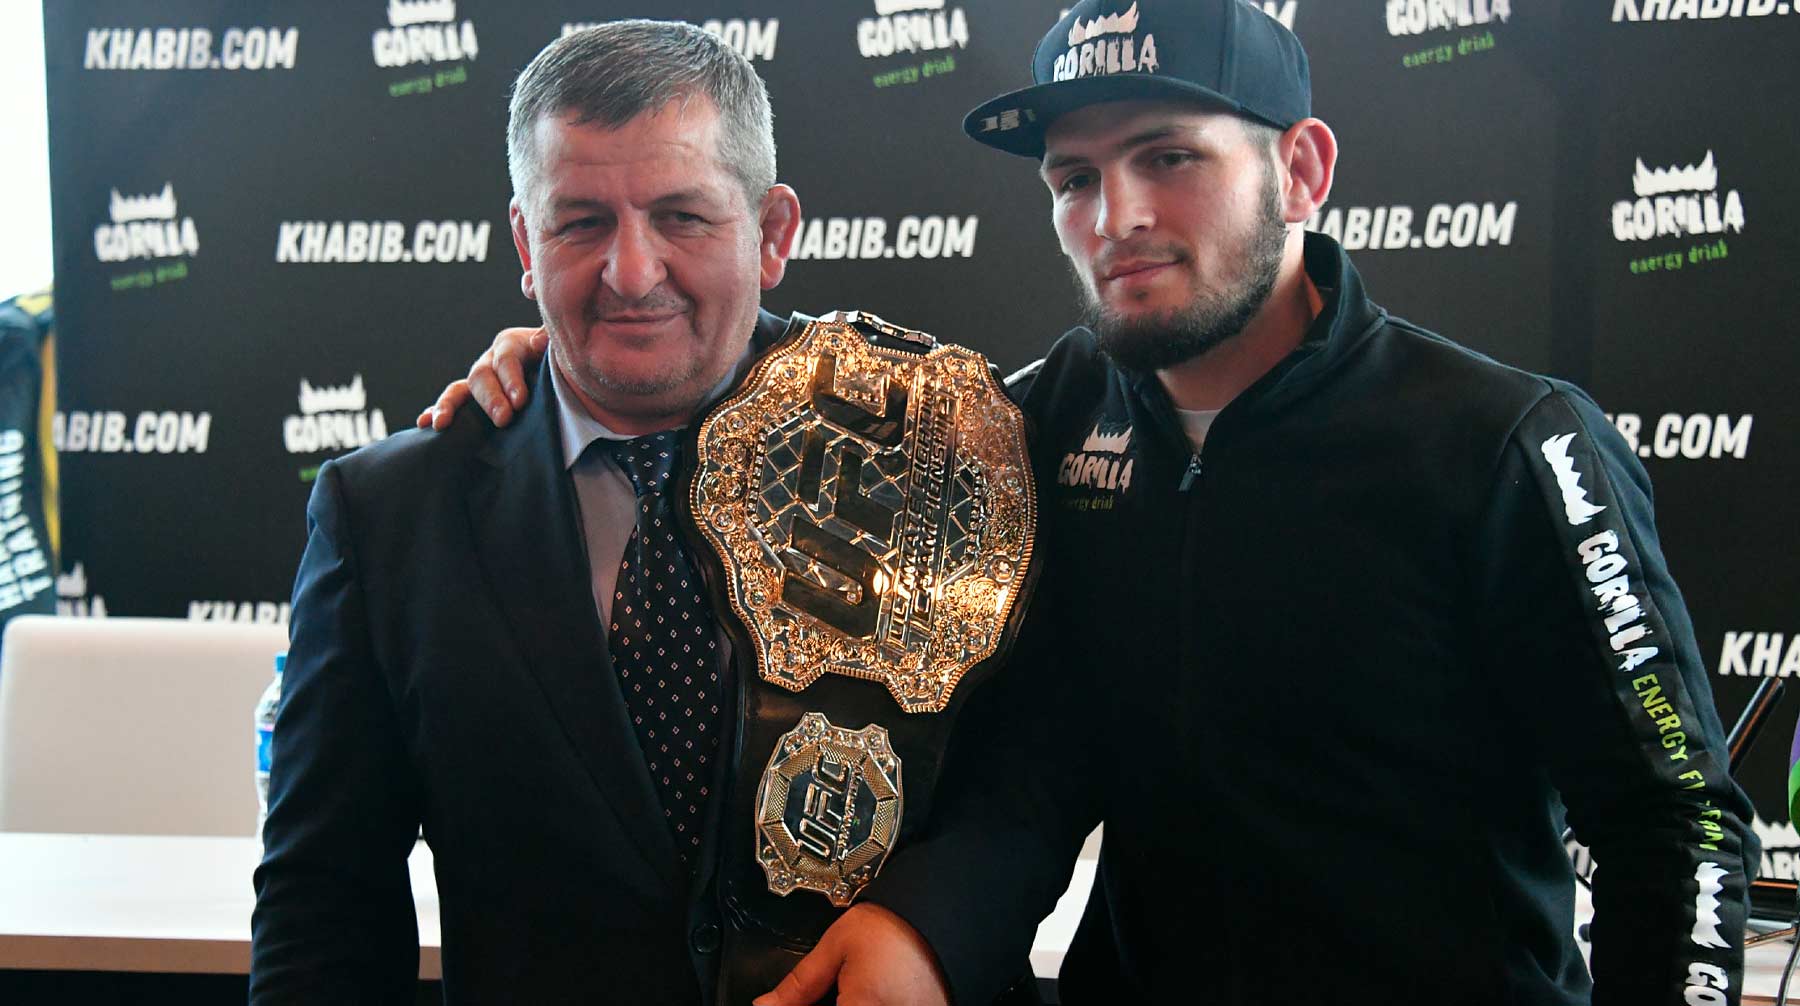 Чемпион UFC также призвал жителей Дагестана соблюдать режим самоизоляции и признался, что его родственники заразились COVID-19 Фото: © Global Look Press / Komsomolskaya Pravda